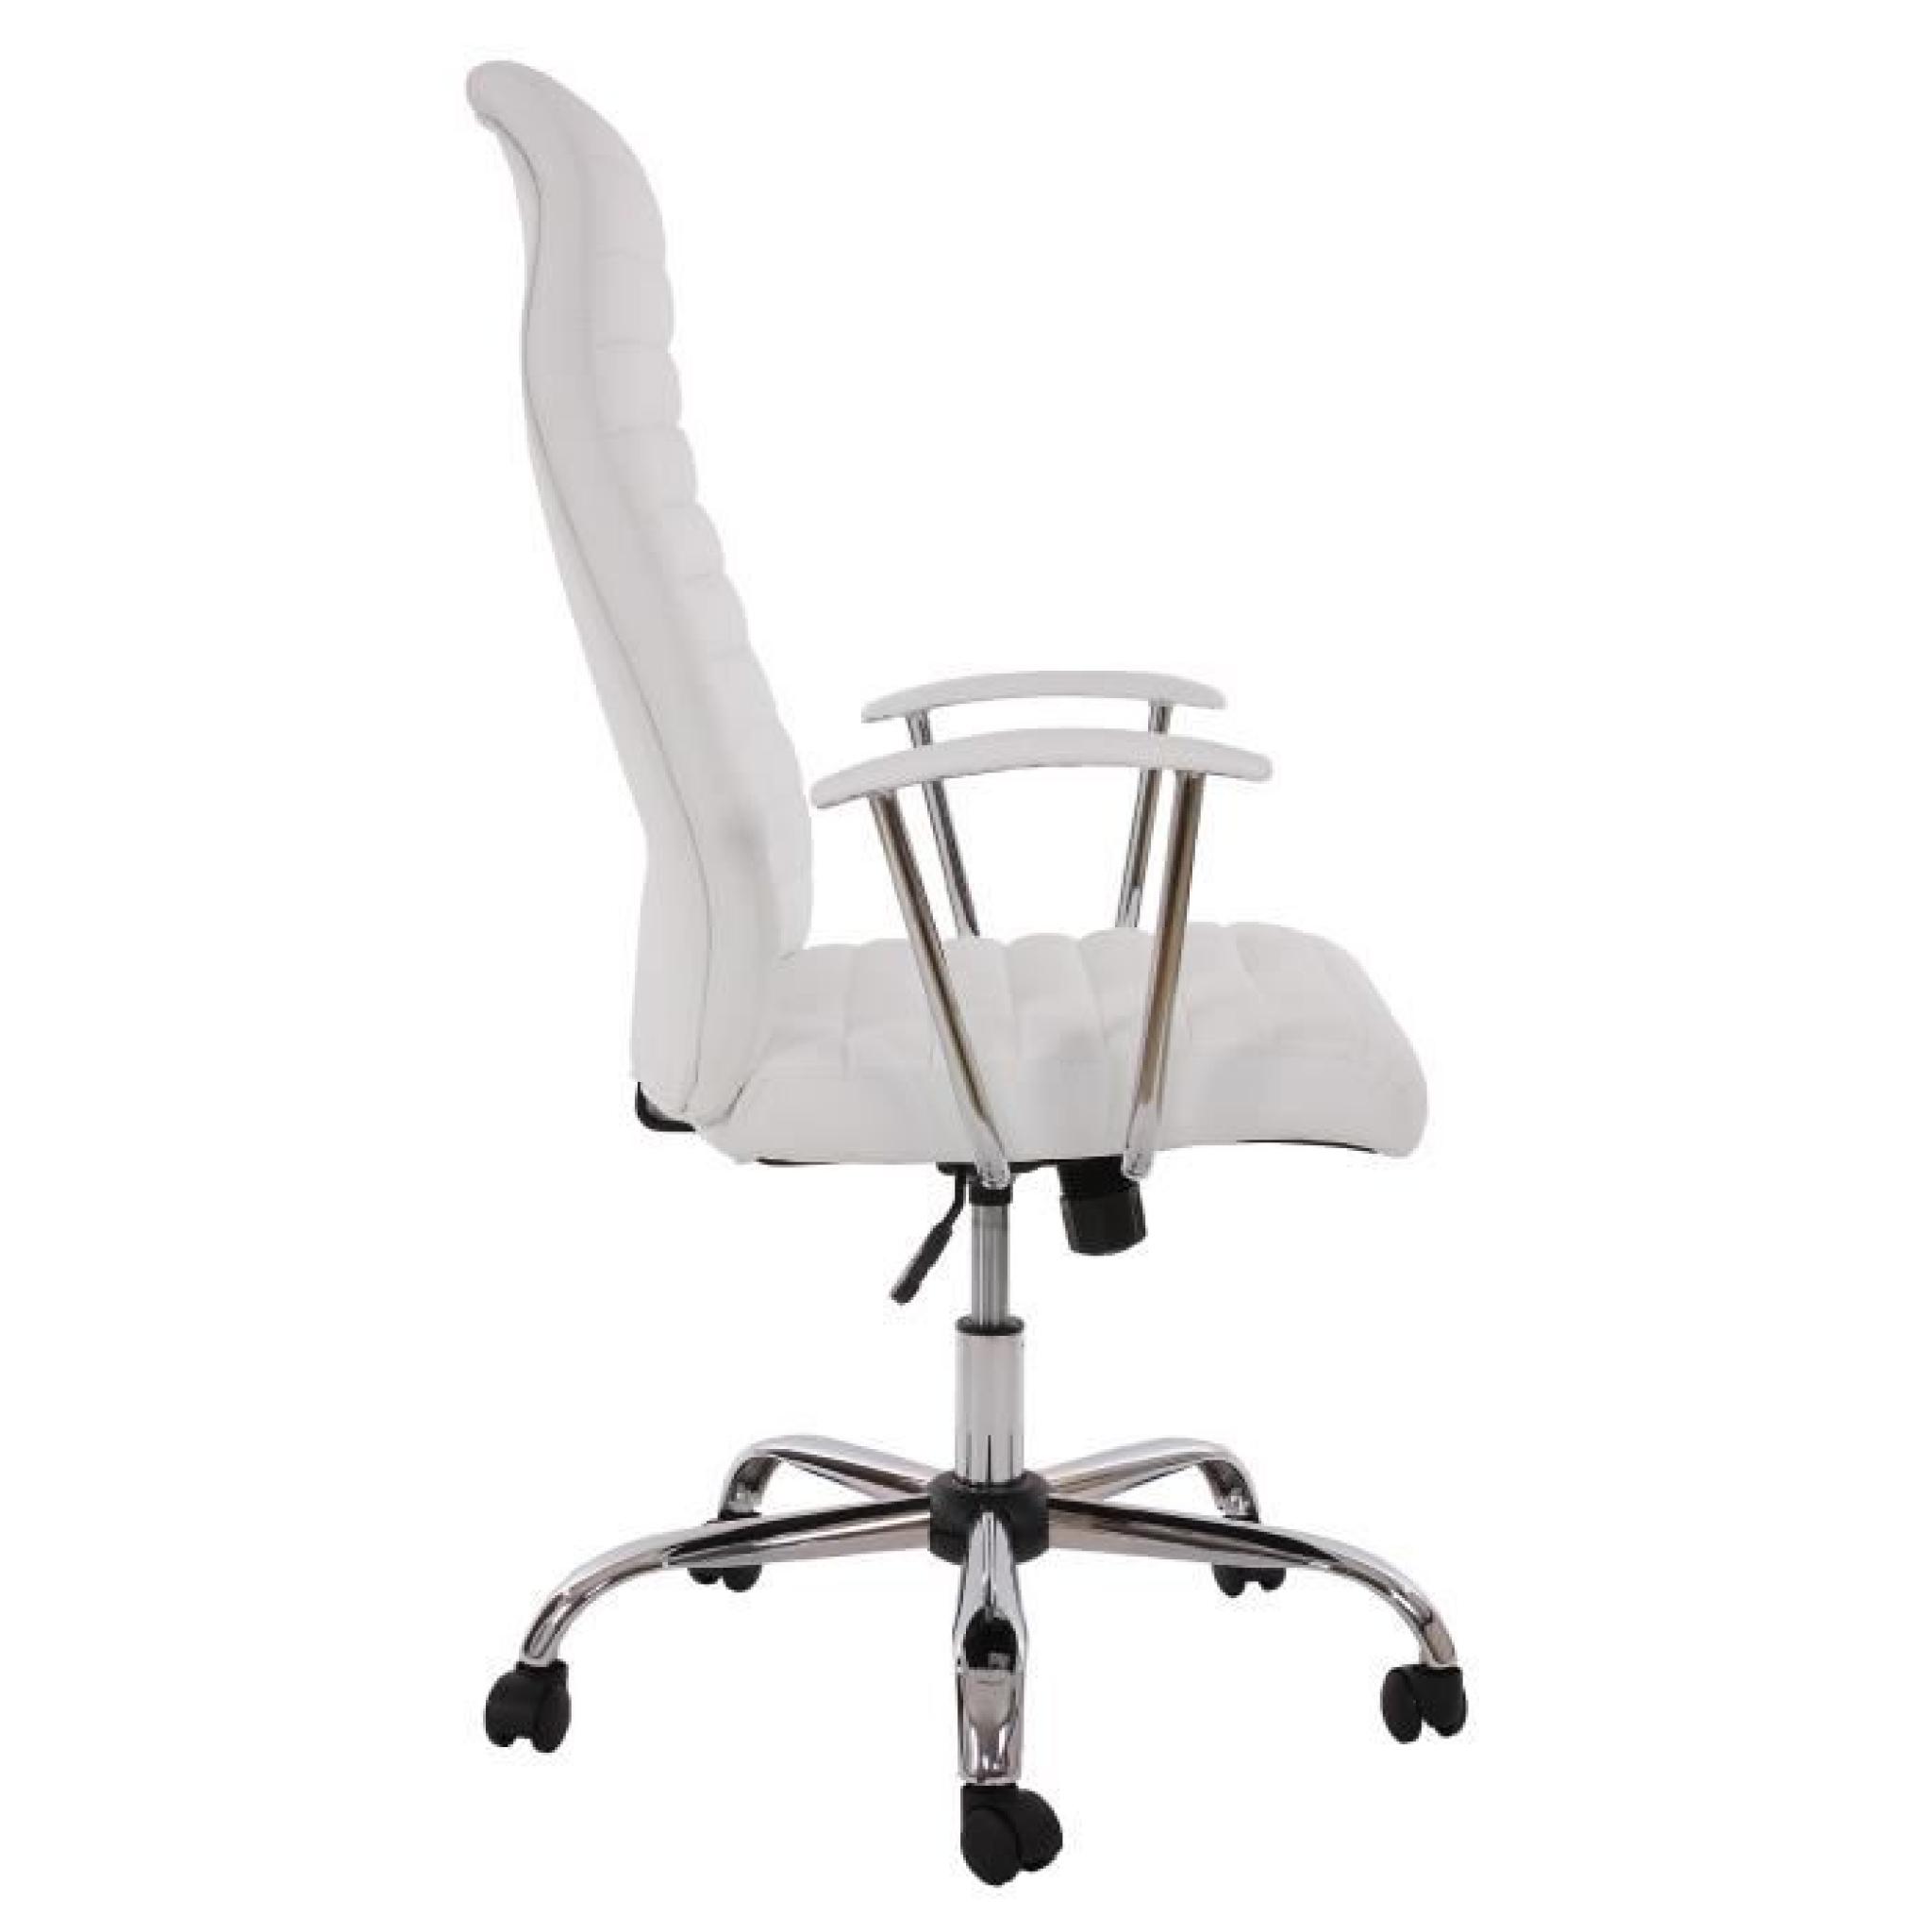  Chaise de bureau pivotant et inclinable , forme ergonomique ~ Blanc pas cher